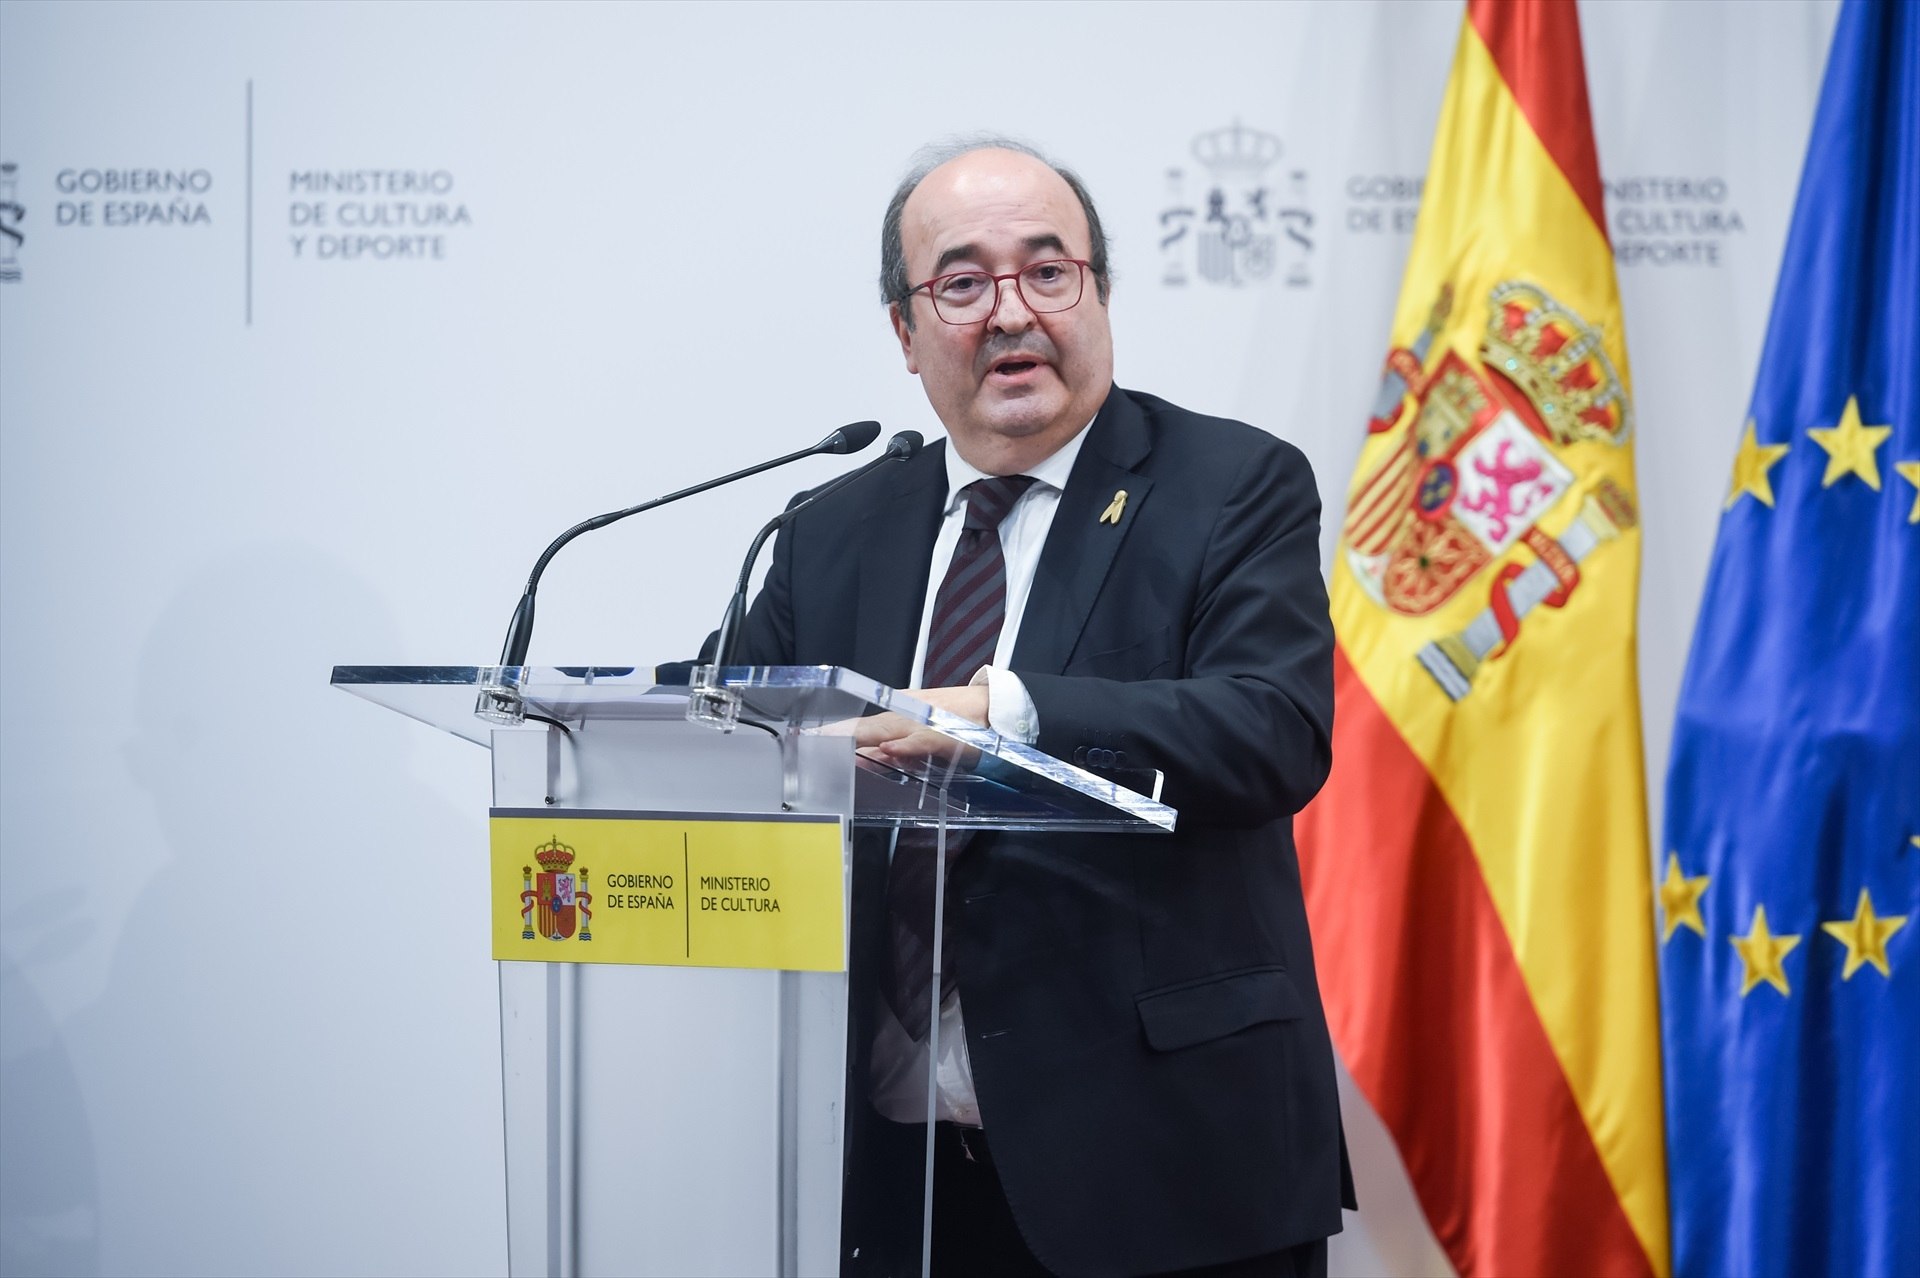 Diplomáticos españoles muestran "preocupación" por el nombramiento de Iceta como embajador ante la Unesco